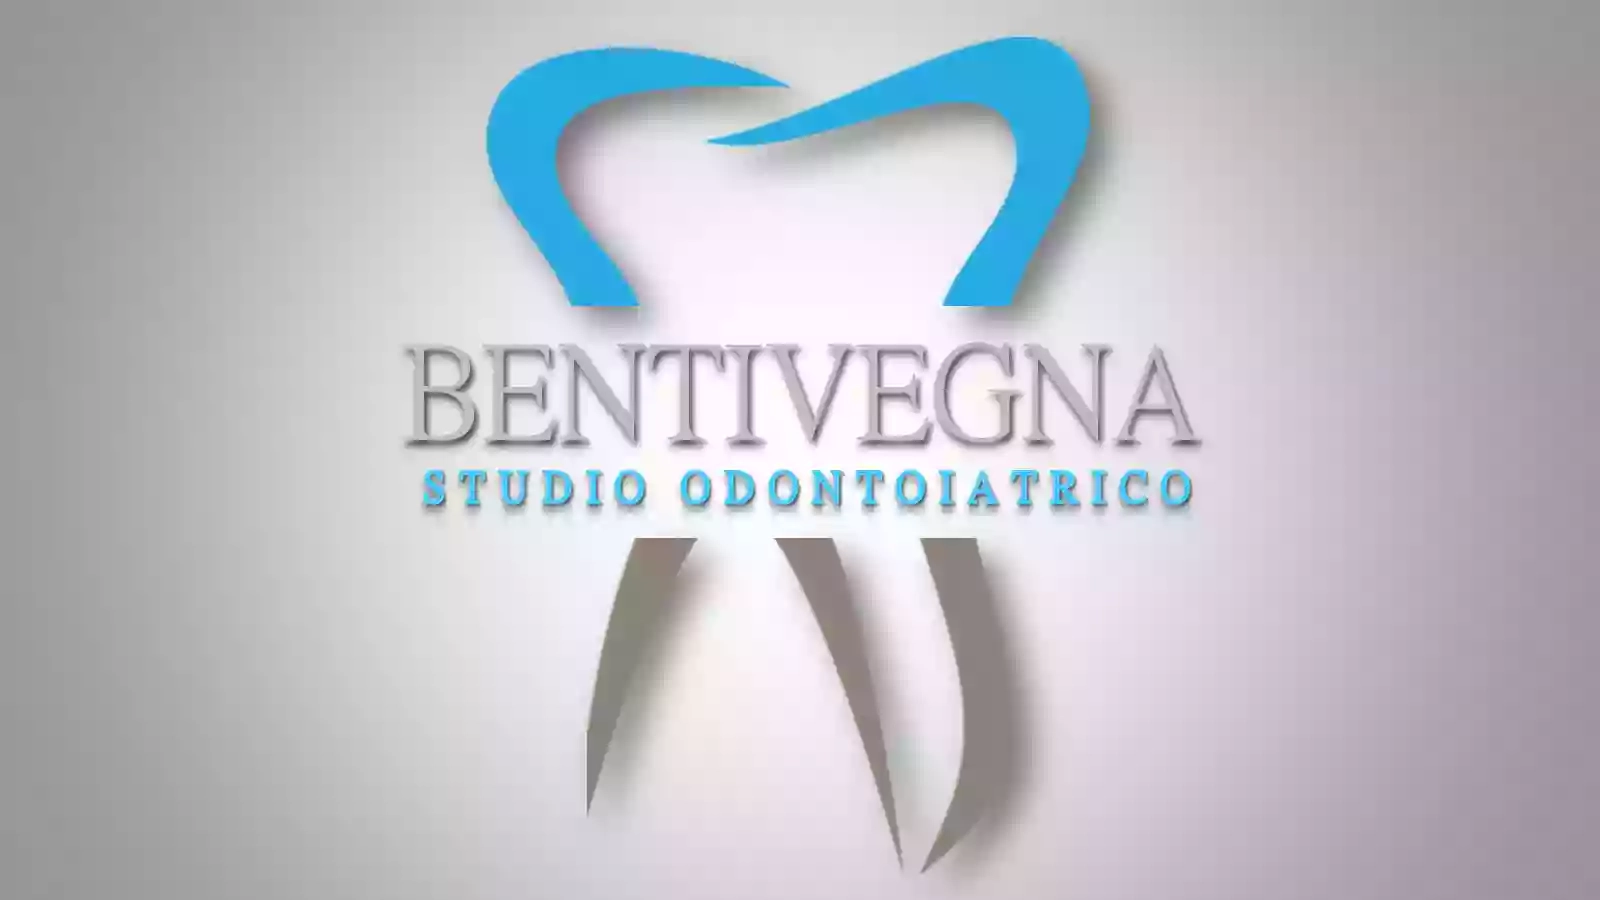 Studio Dentistico Dr. Samuele Bentivegna